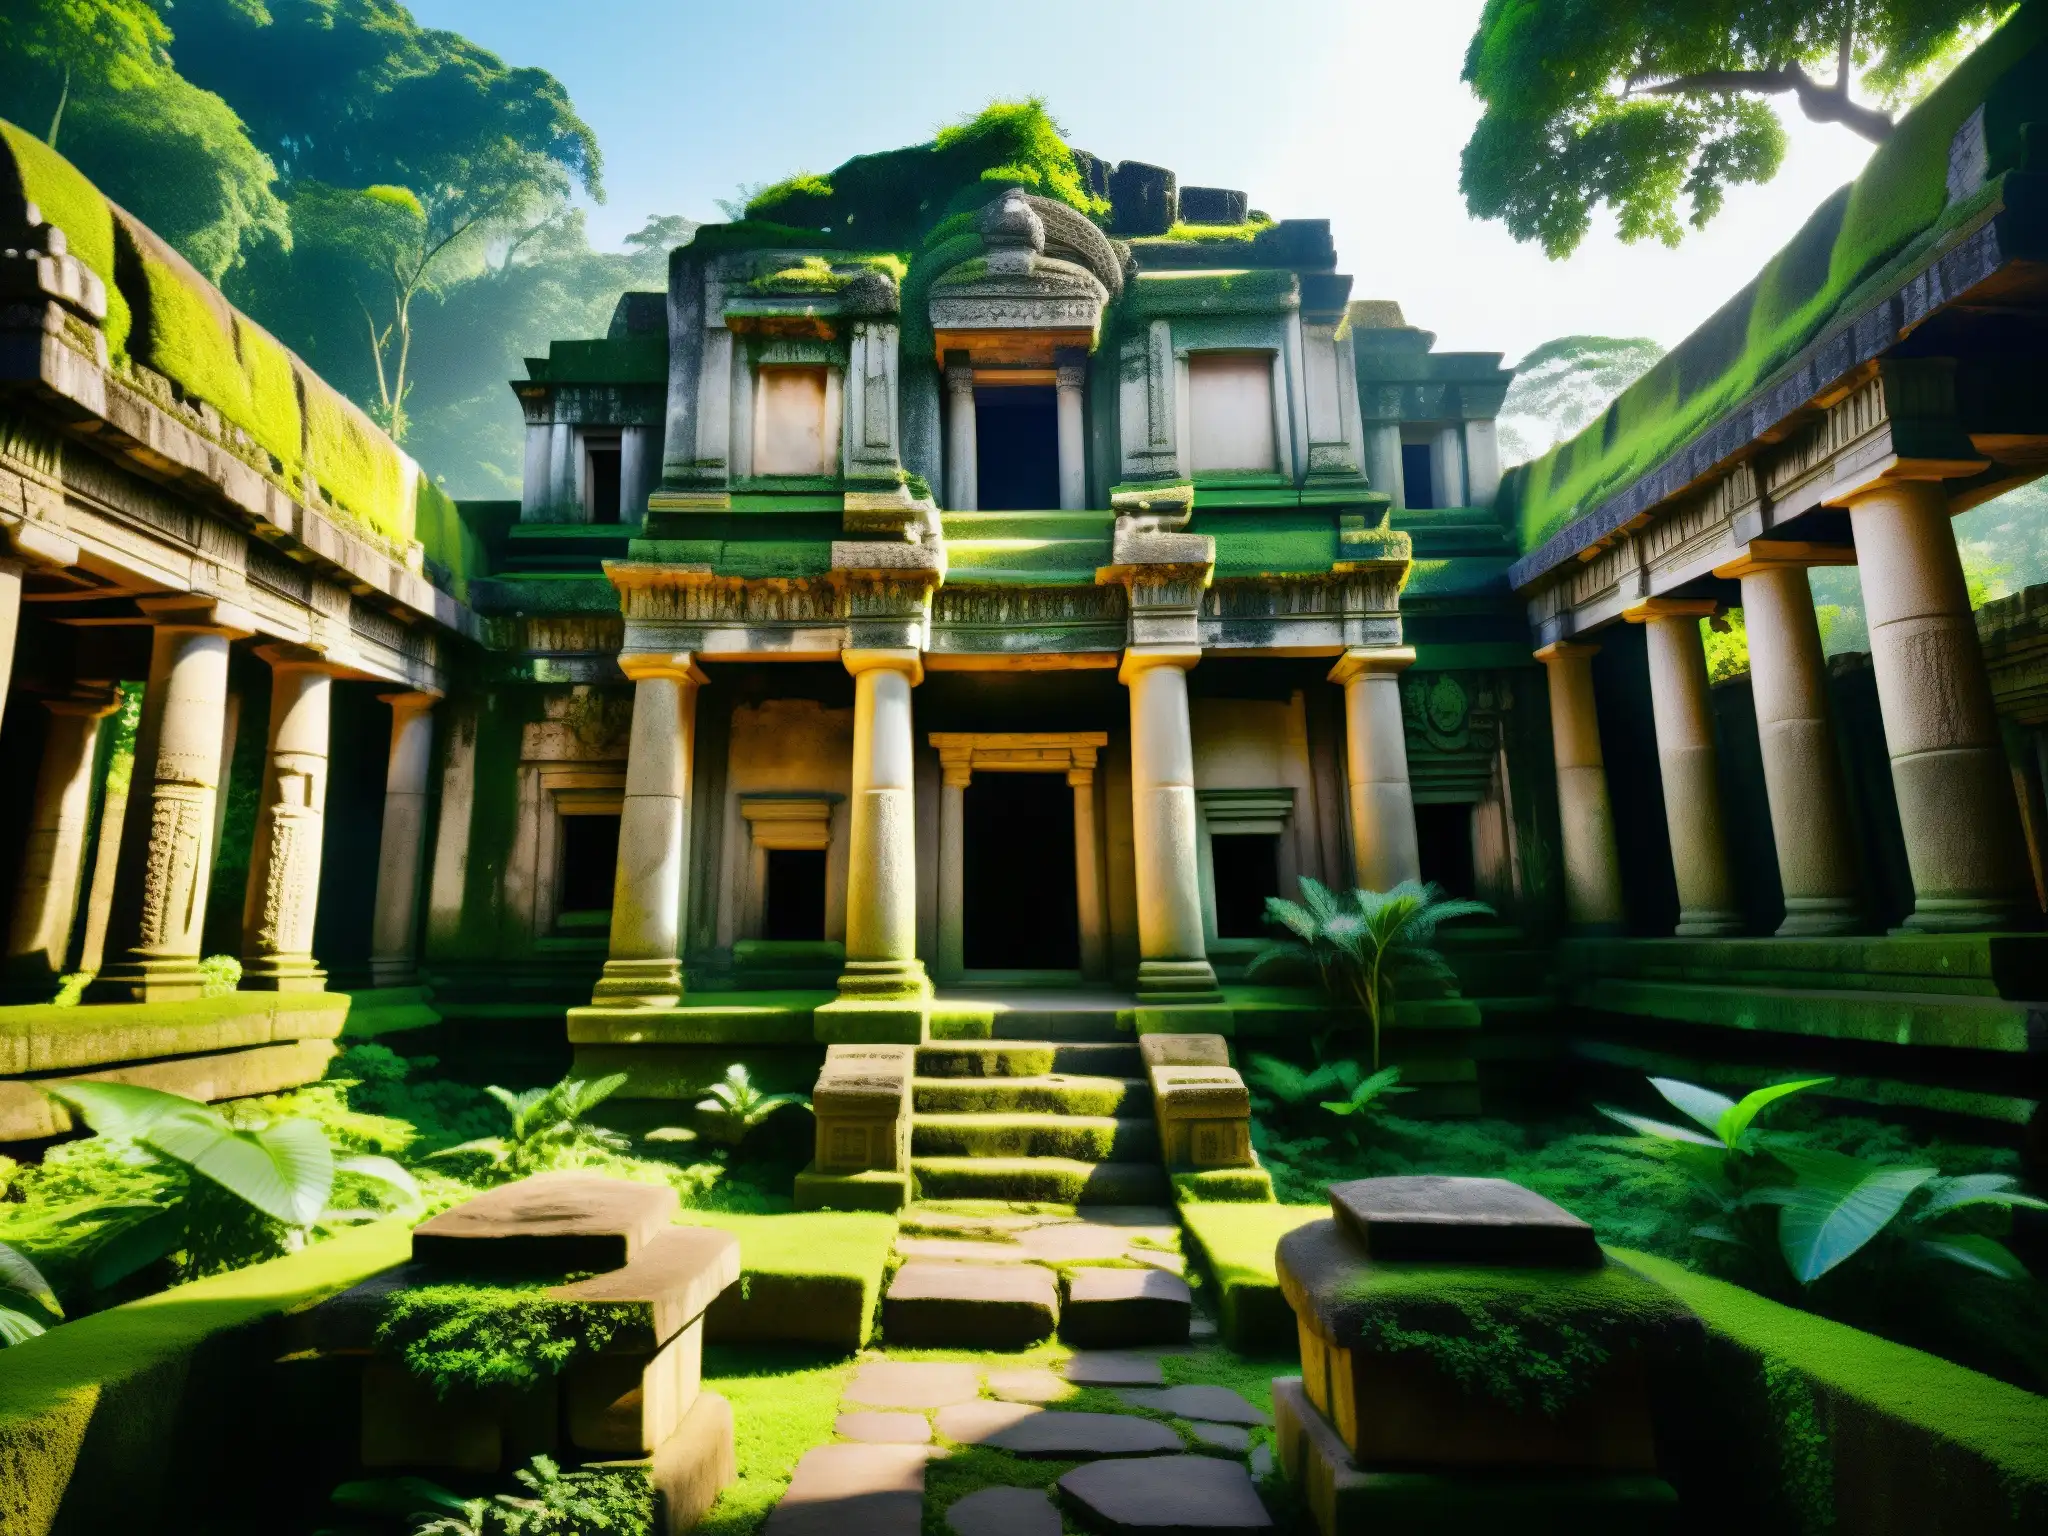 Ruinas del templo antiguo en la exuberante jungla, con carvings intrincados y piedra gastada